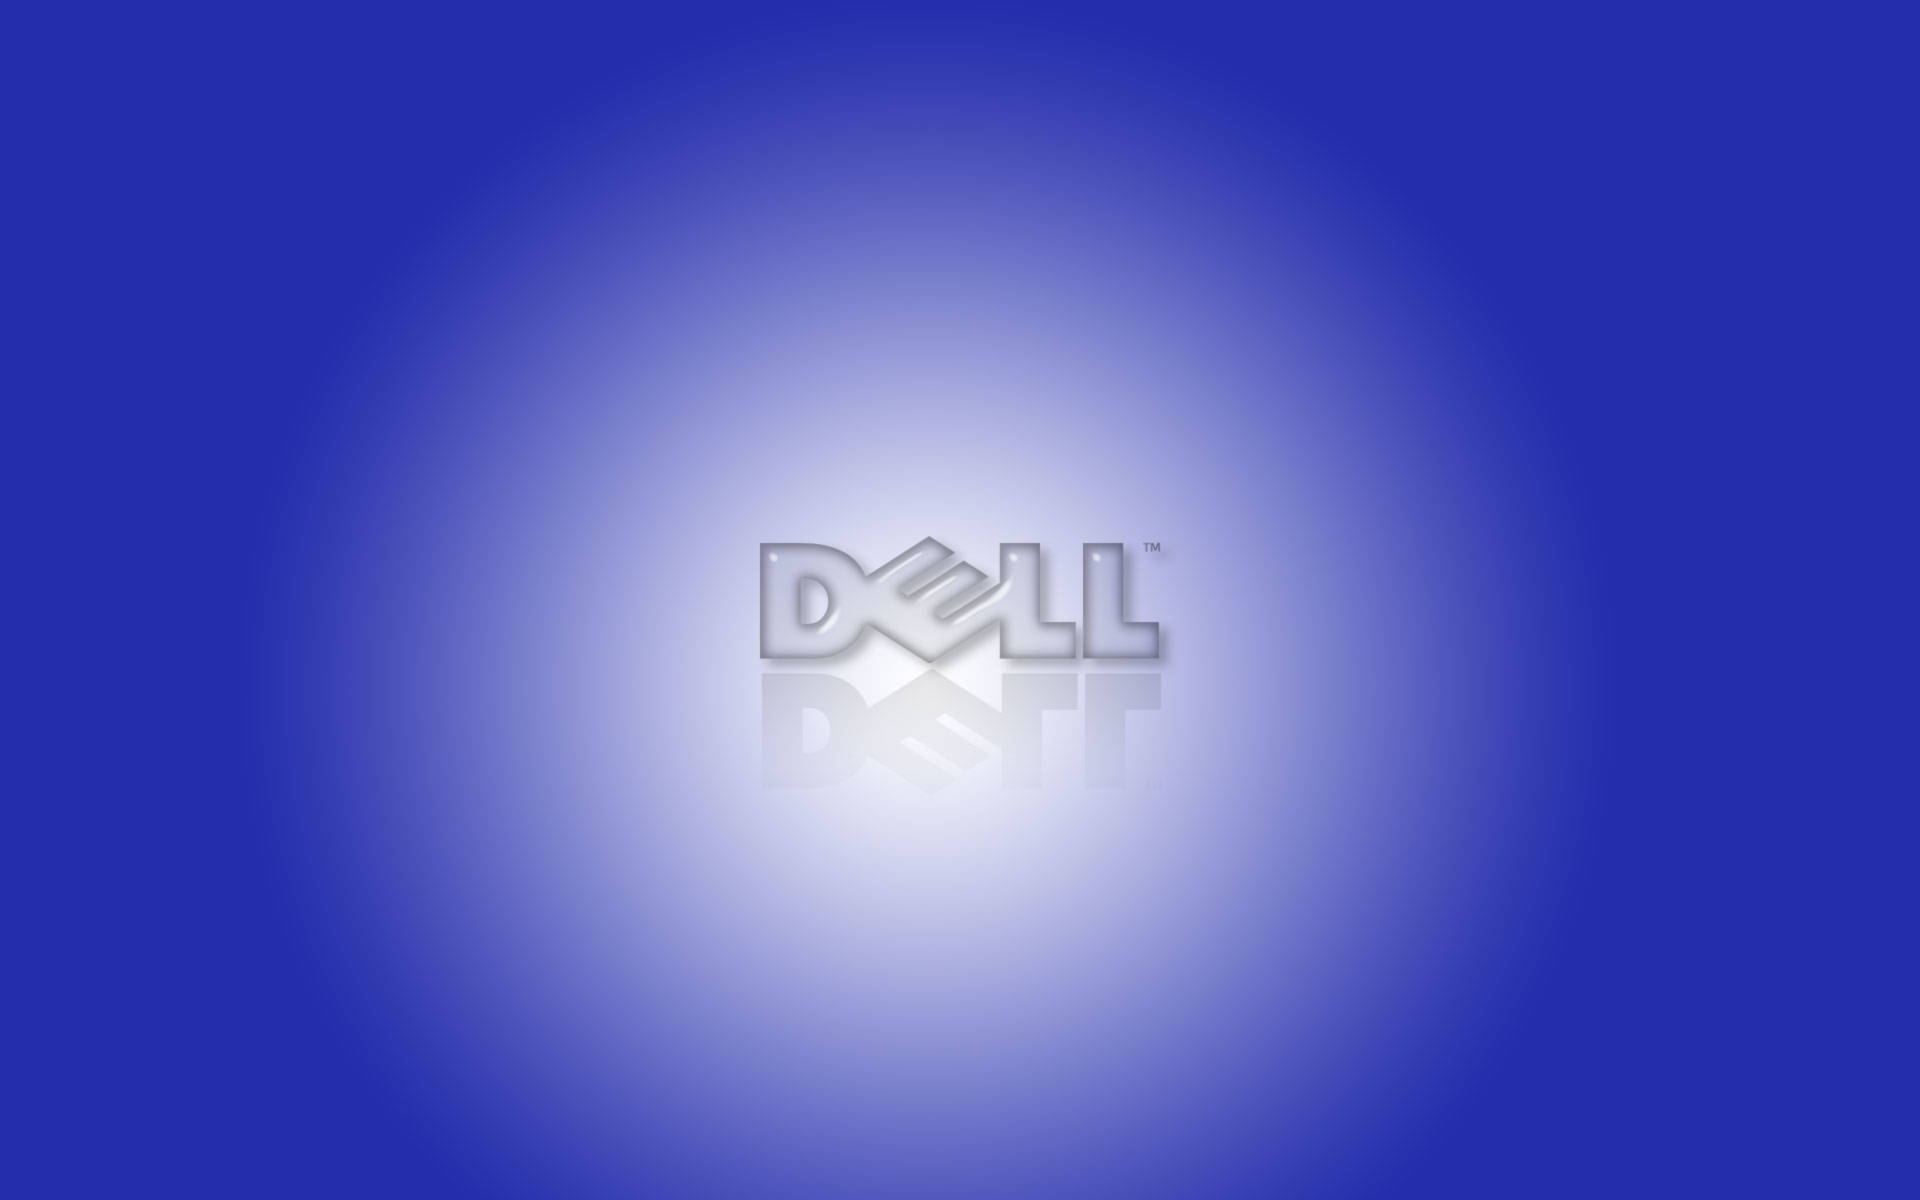 Spotlighted Dell 4k Logo Background